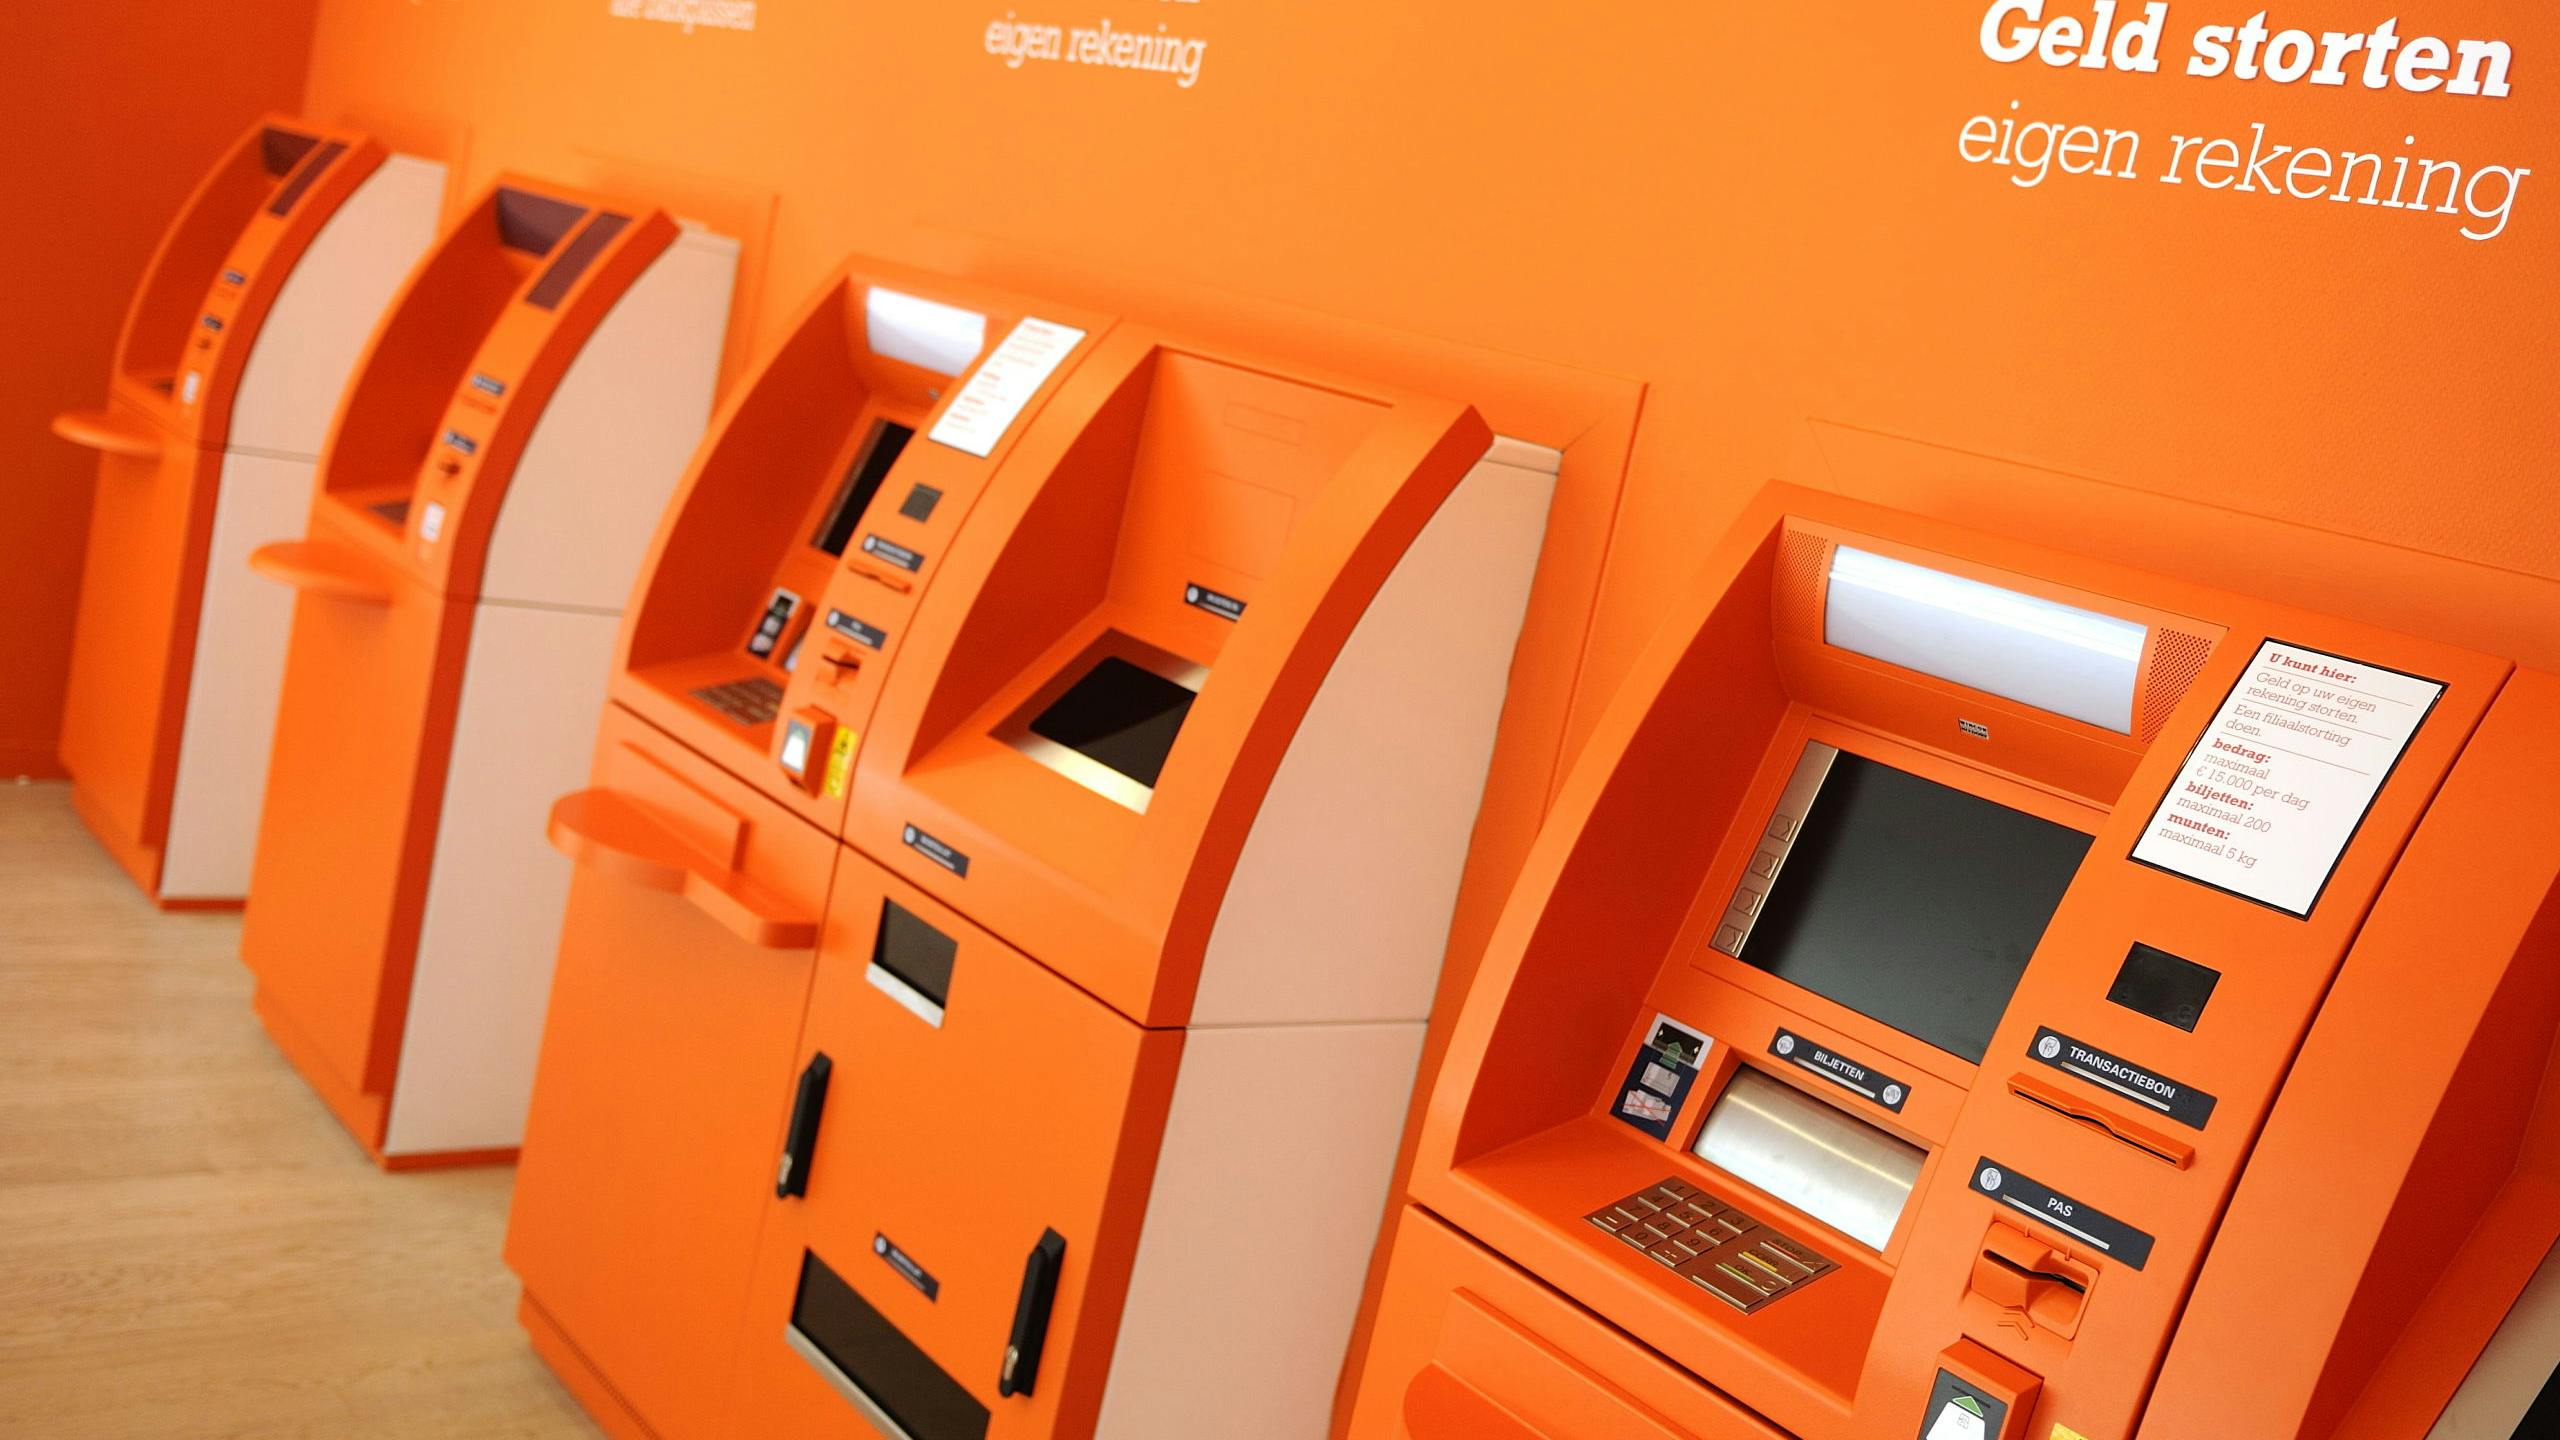 Geldautomaten in een ING filiaal 